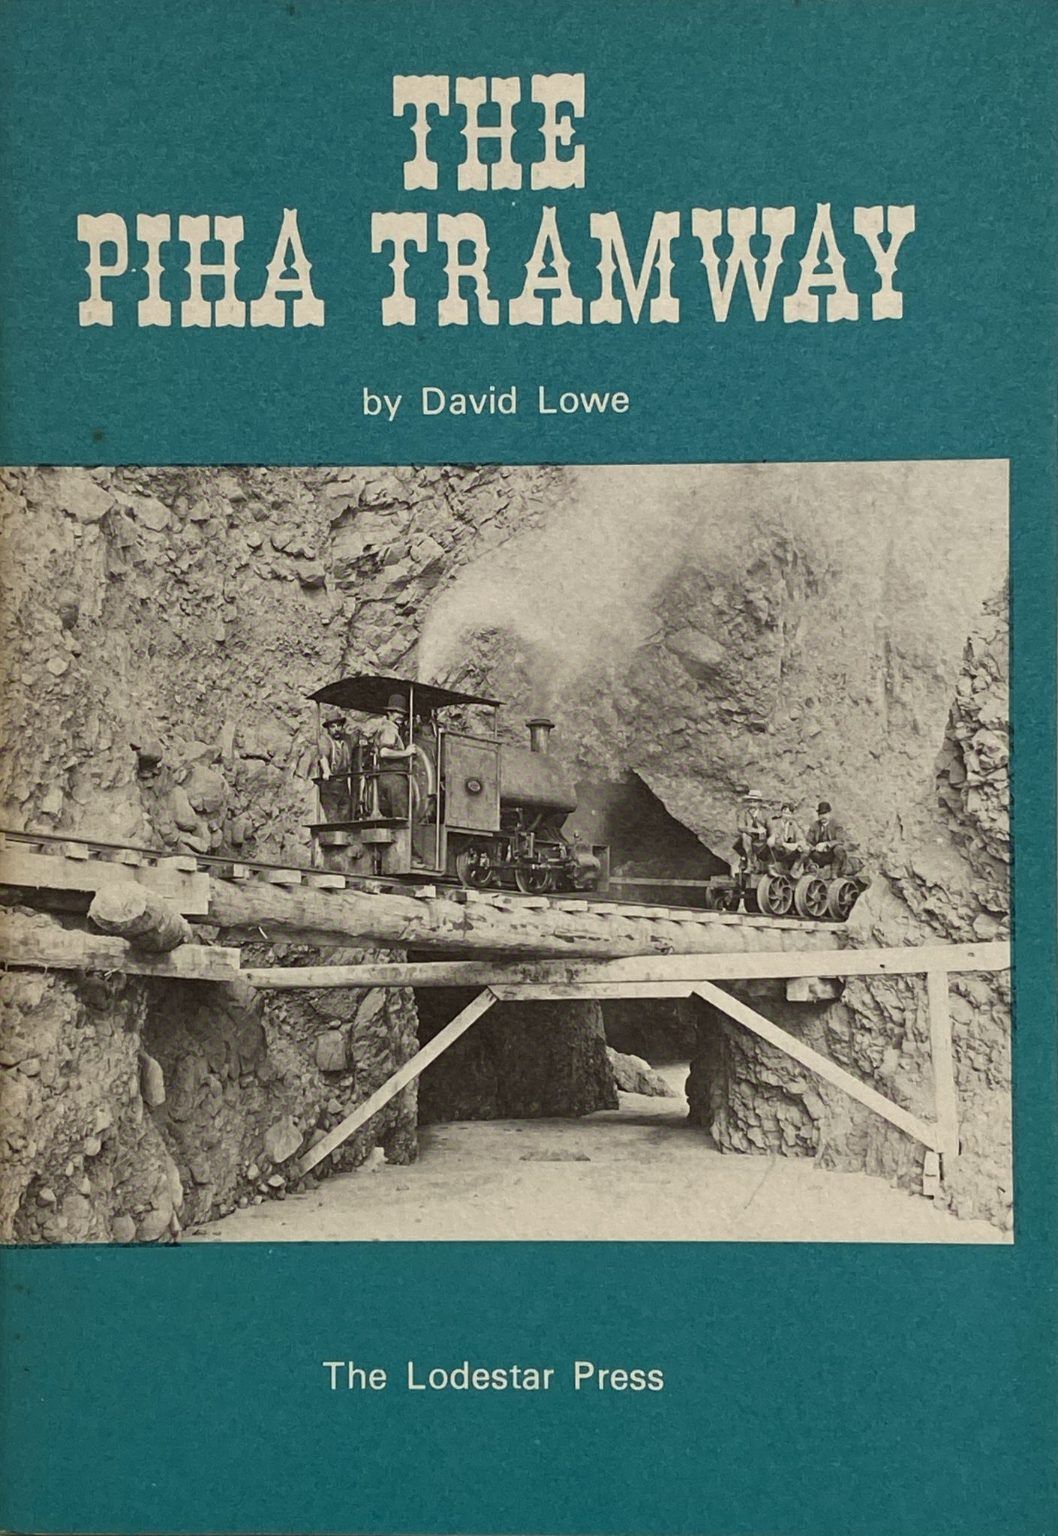 THE PIHA TRAMWAY